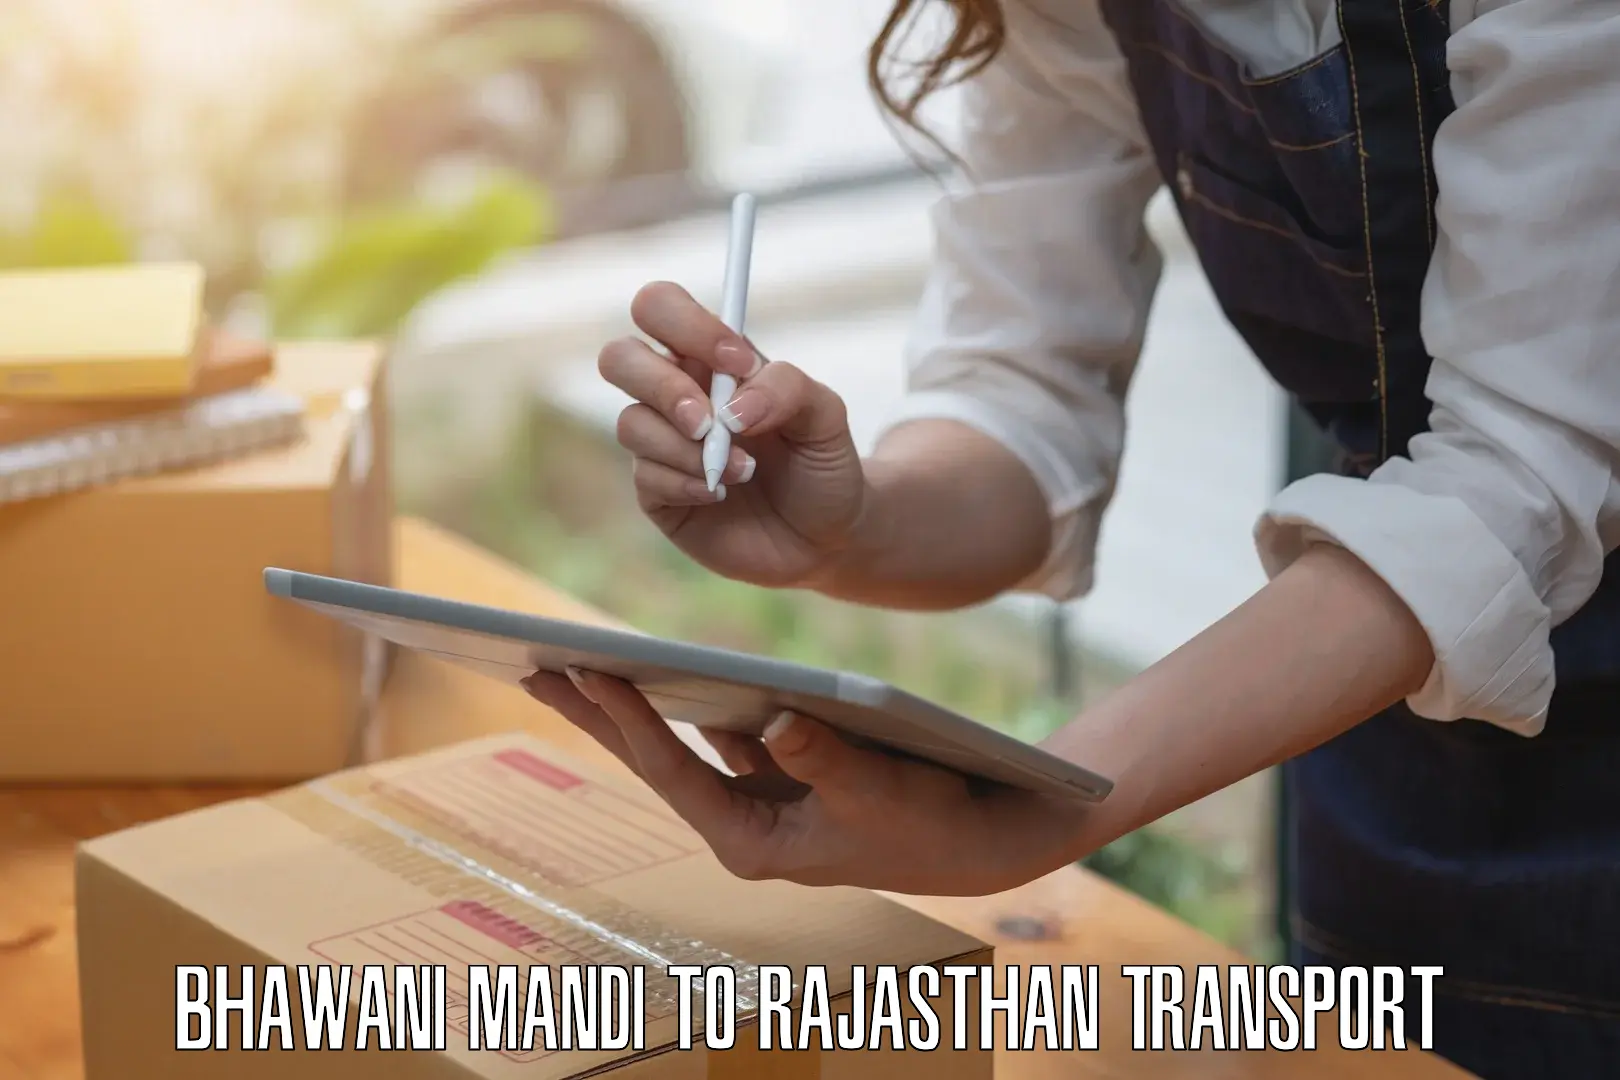 Nationwide transport services Bhawani Mandi to Pratapgarh Rajasthan